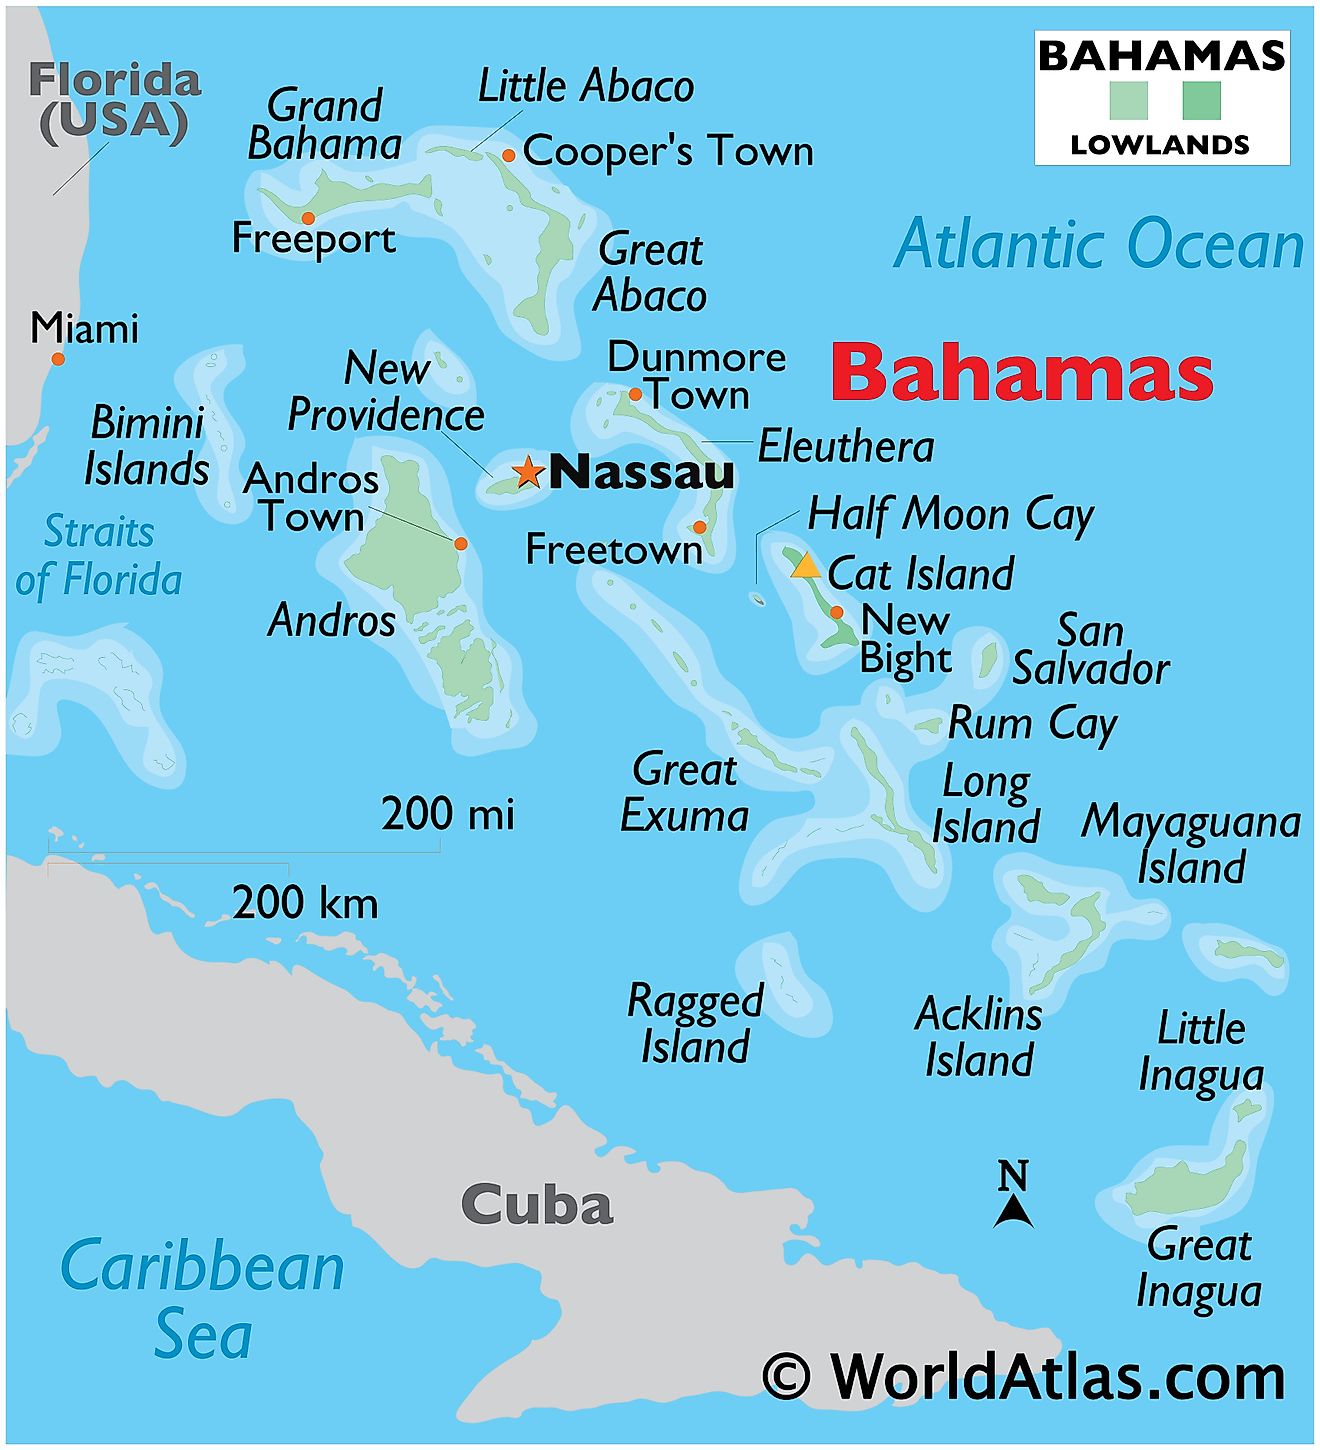 Mapa físico de las Bahamas que muestra islas, asentamientos importantes, fuentes de agua circundantes y más.